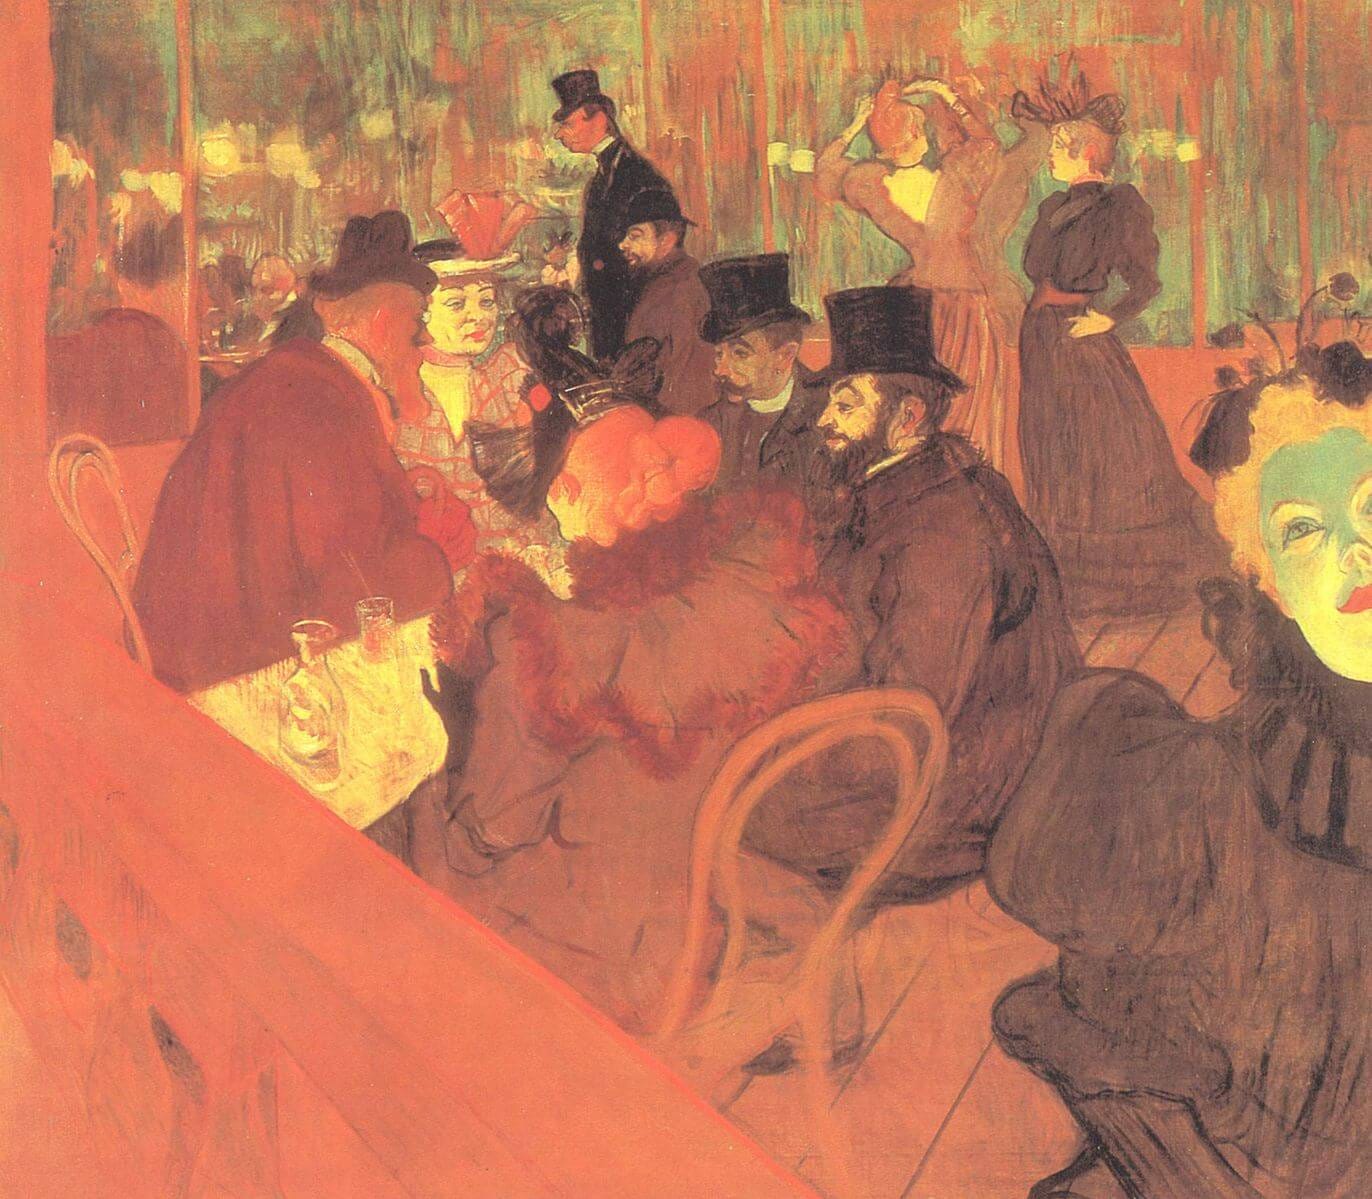 “In The Cabaret” by Henri De Toulouse-Lautrec